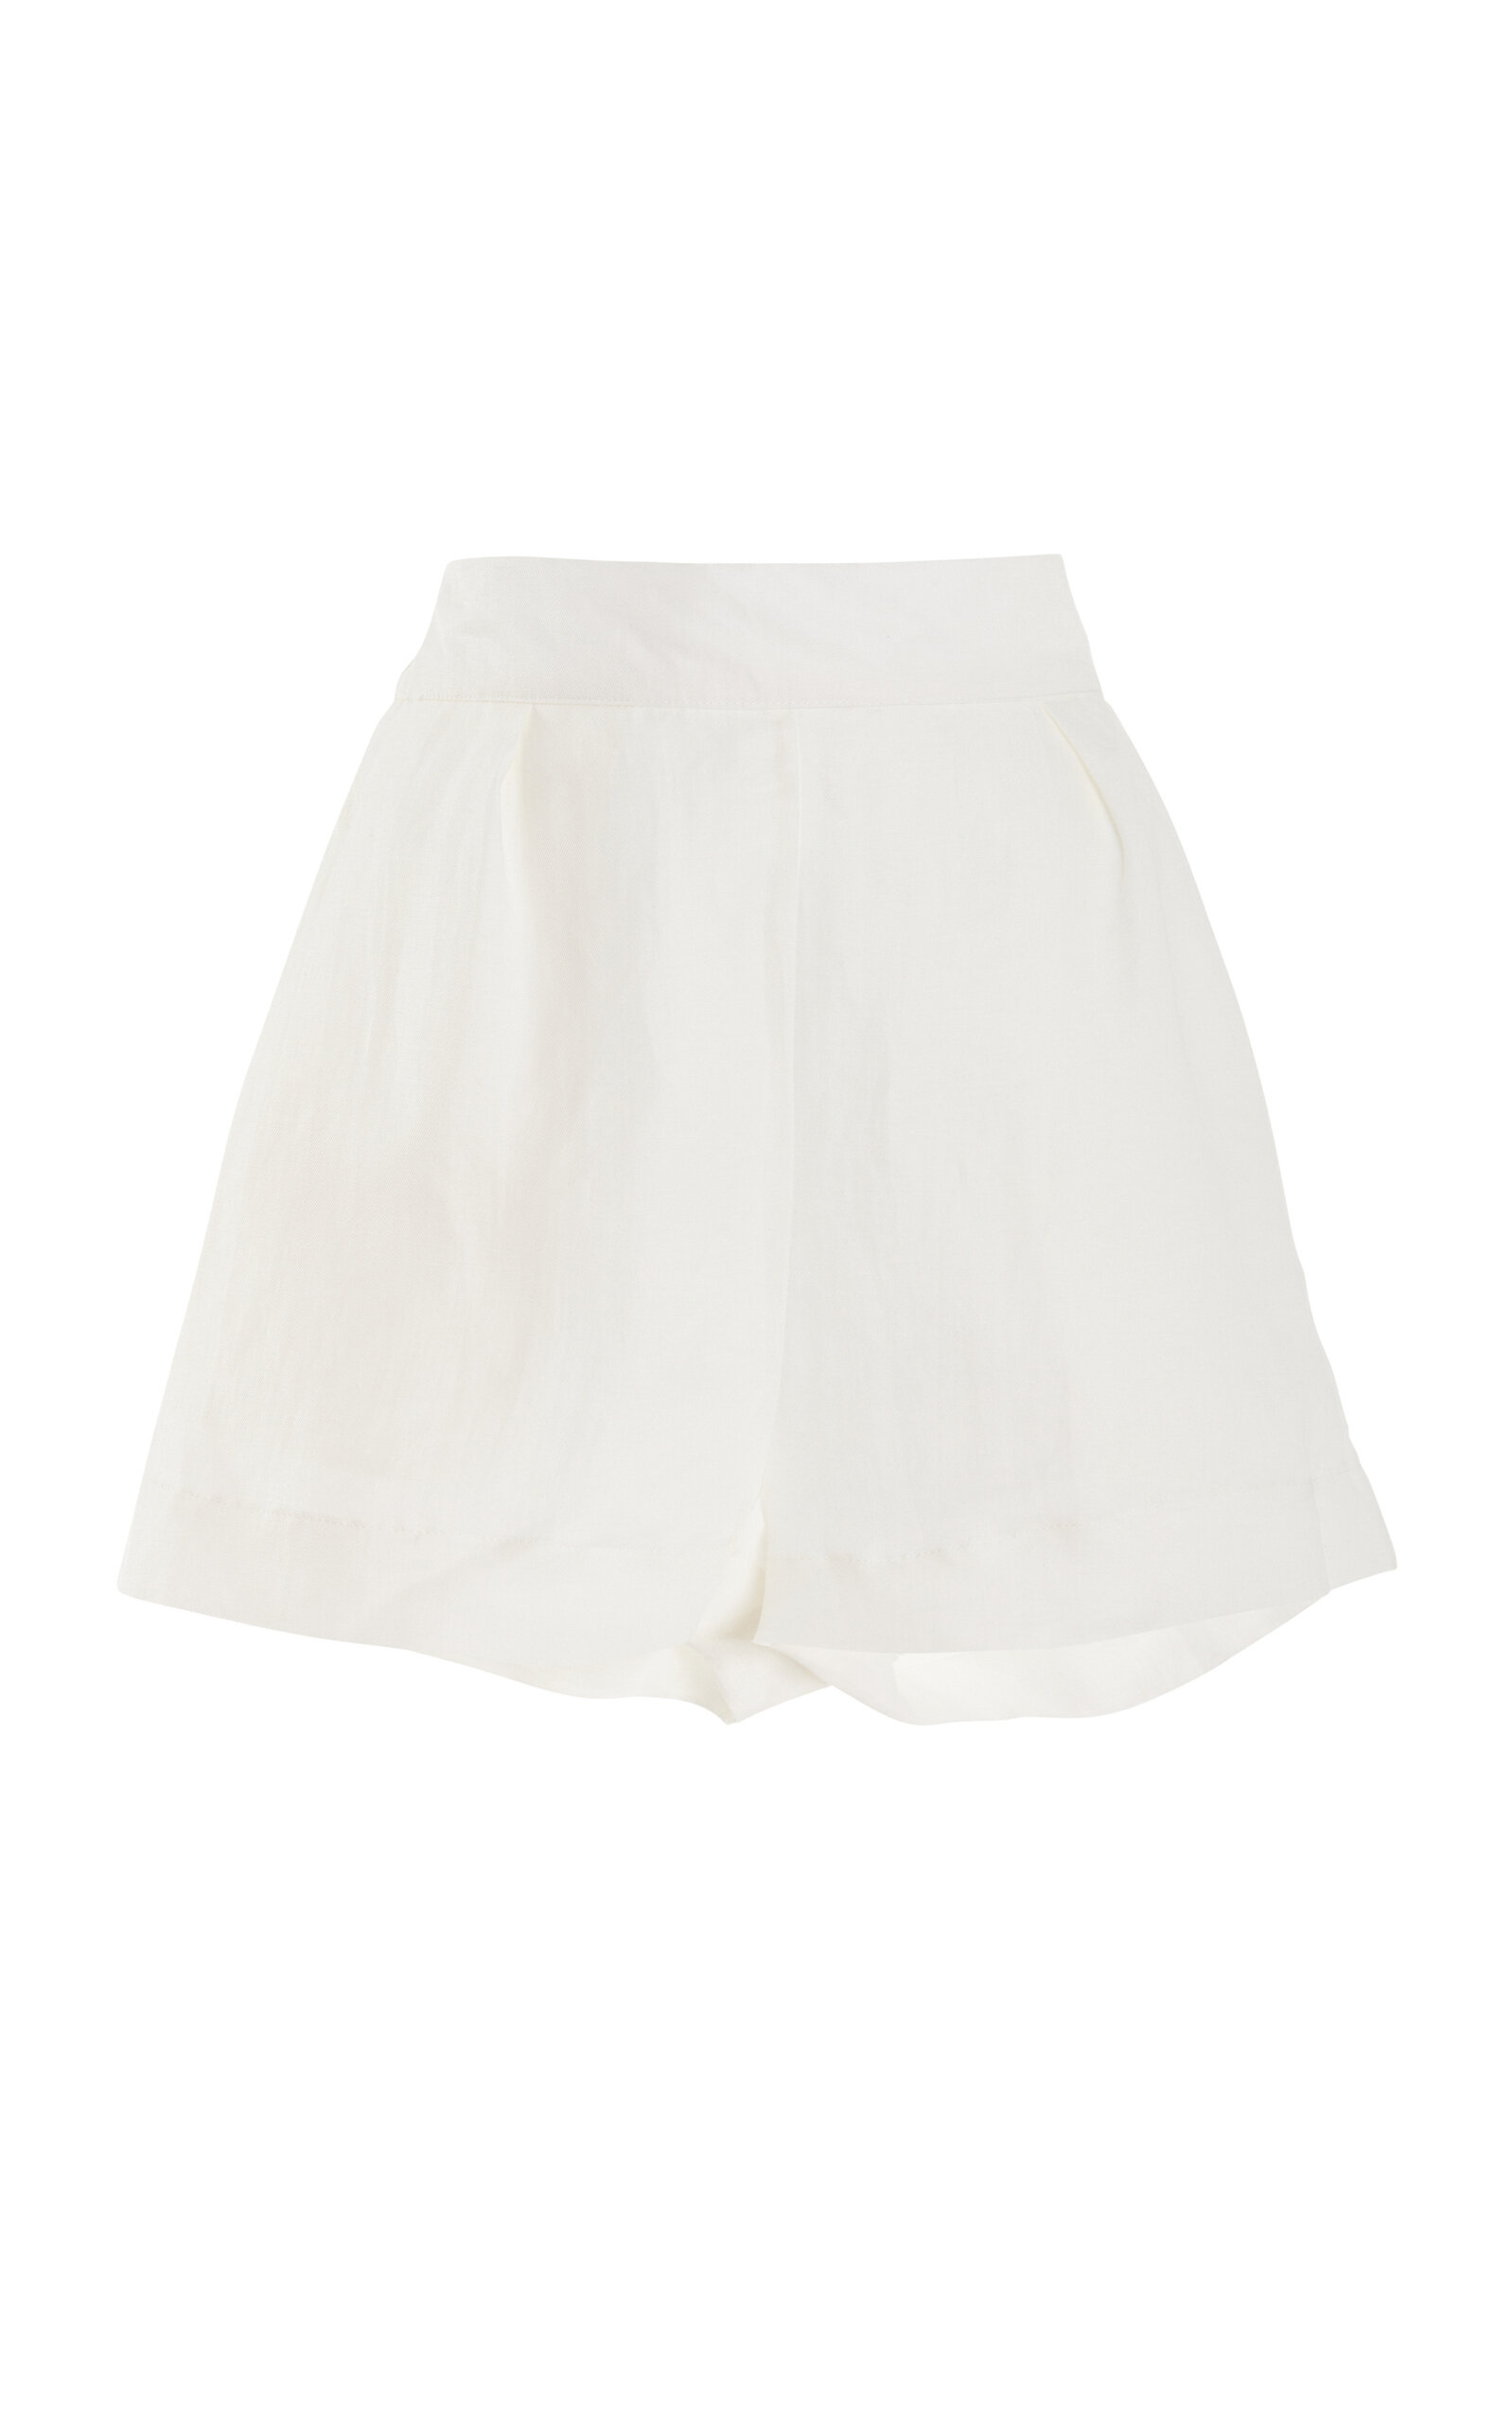 The High-Waisted Linen-Blend Short Shorts